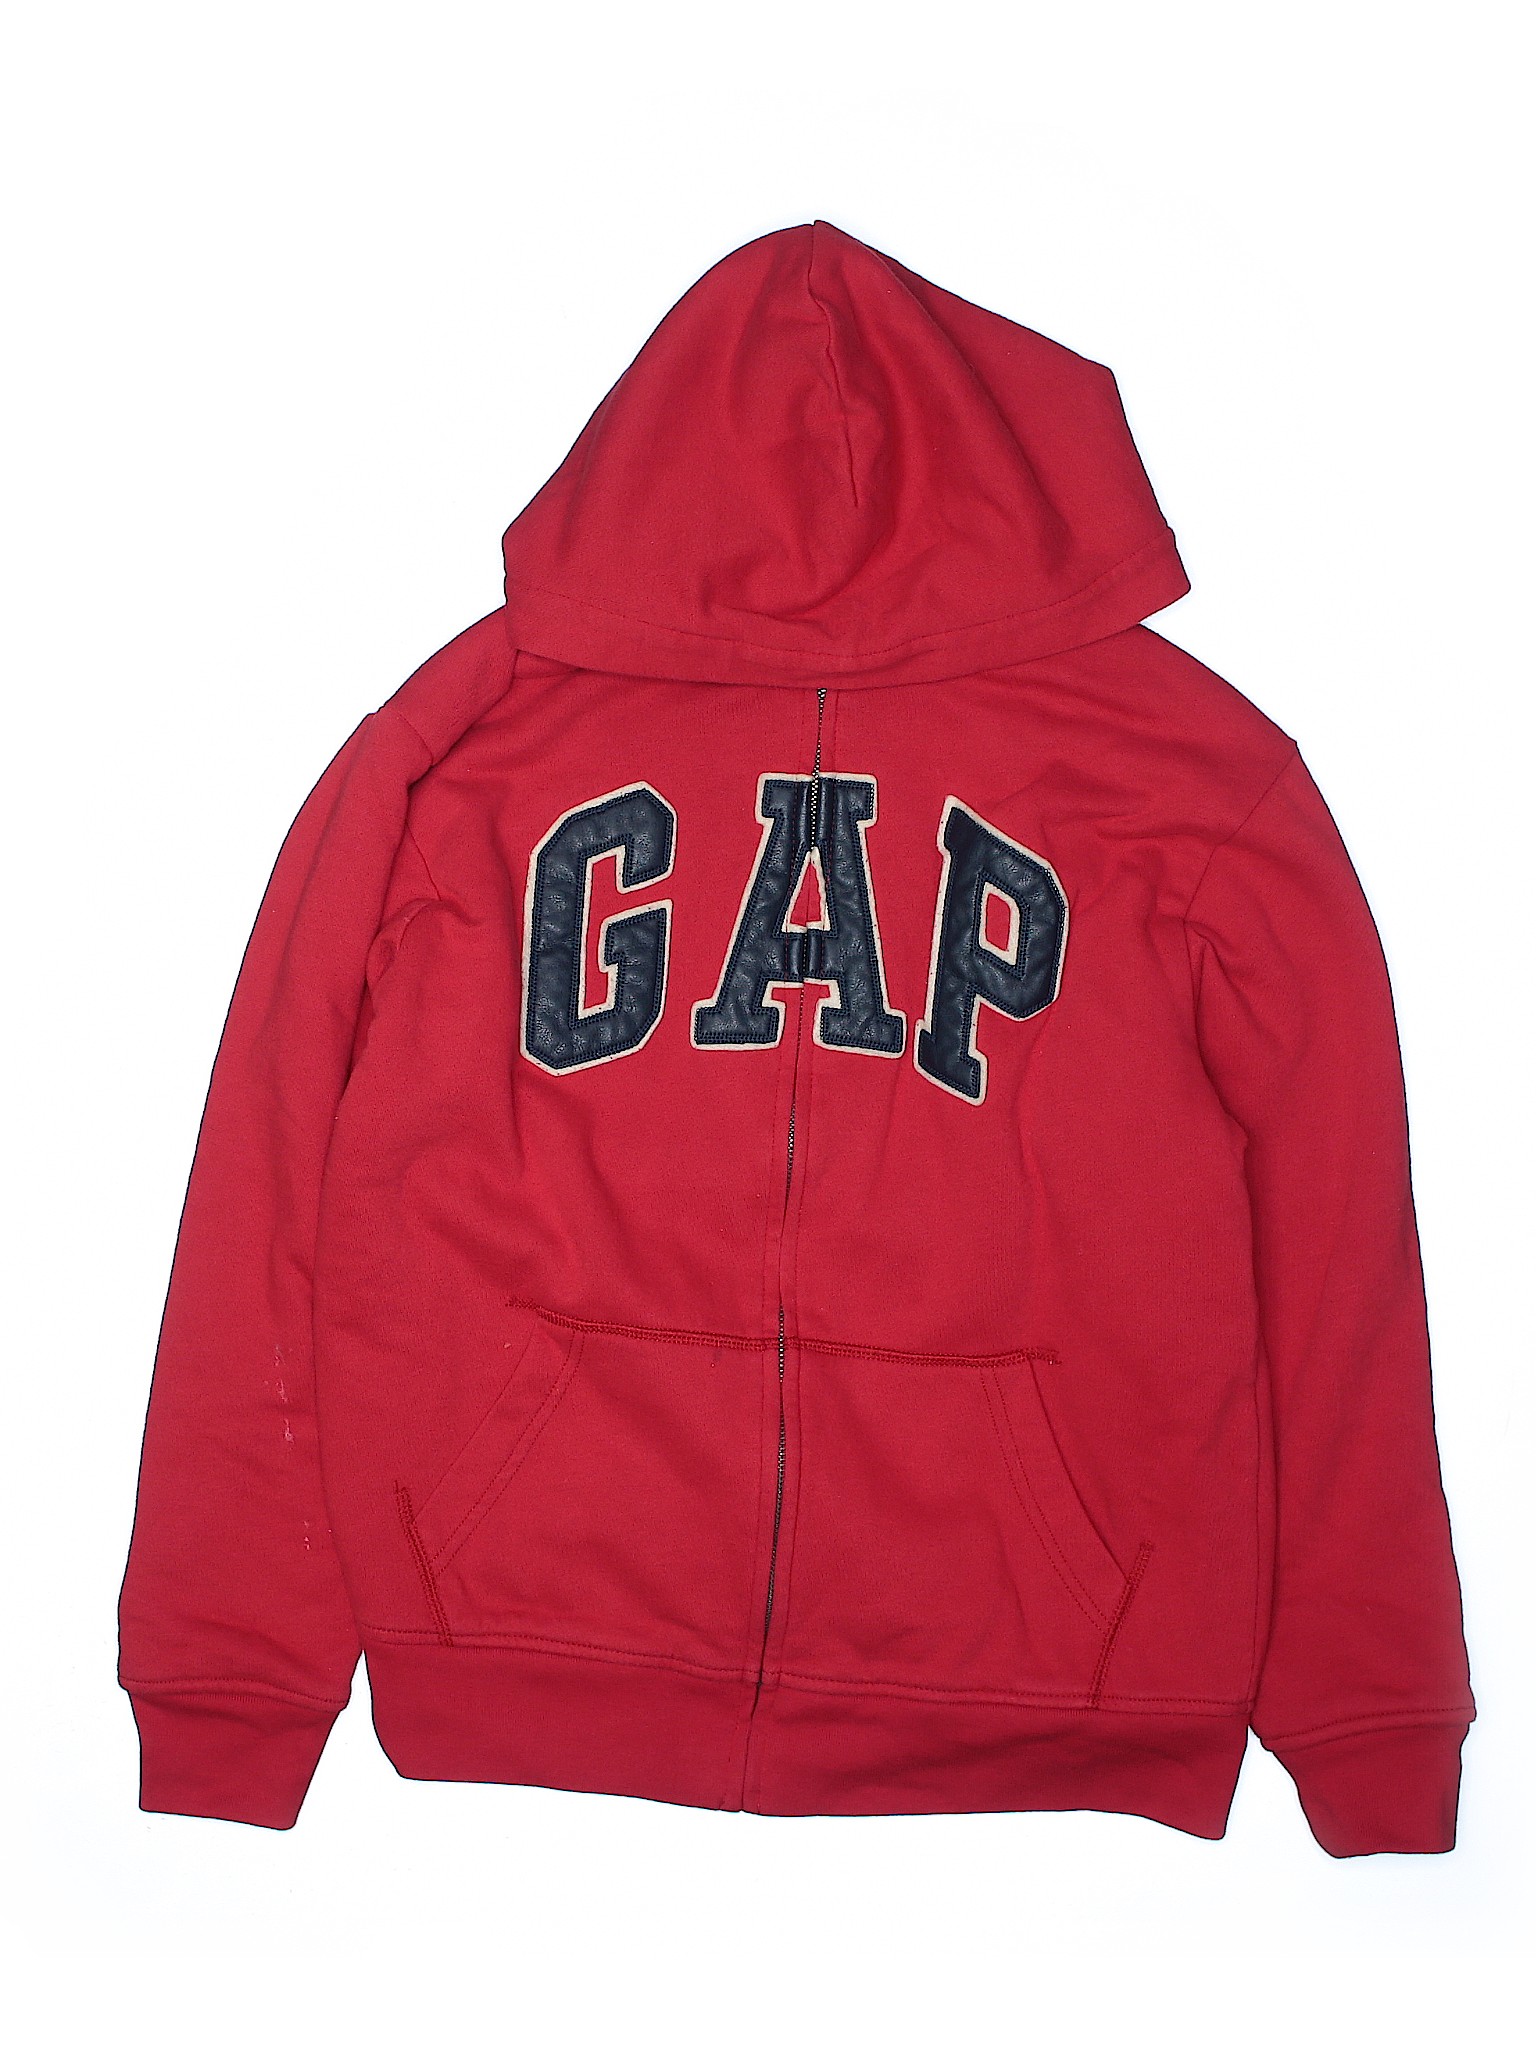 Gap Kids Boys Red Zip Up Hoodie 14 | eBay